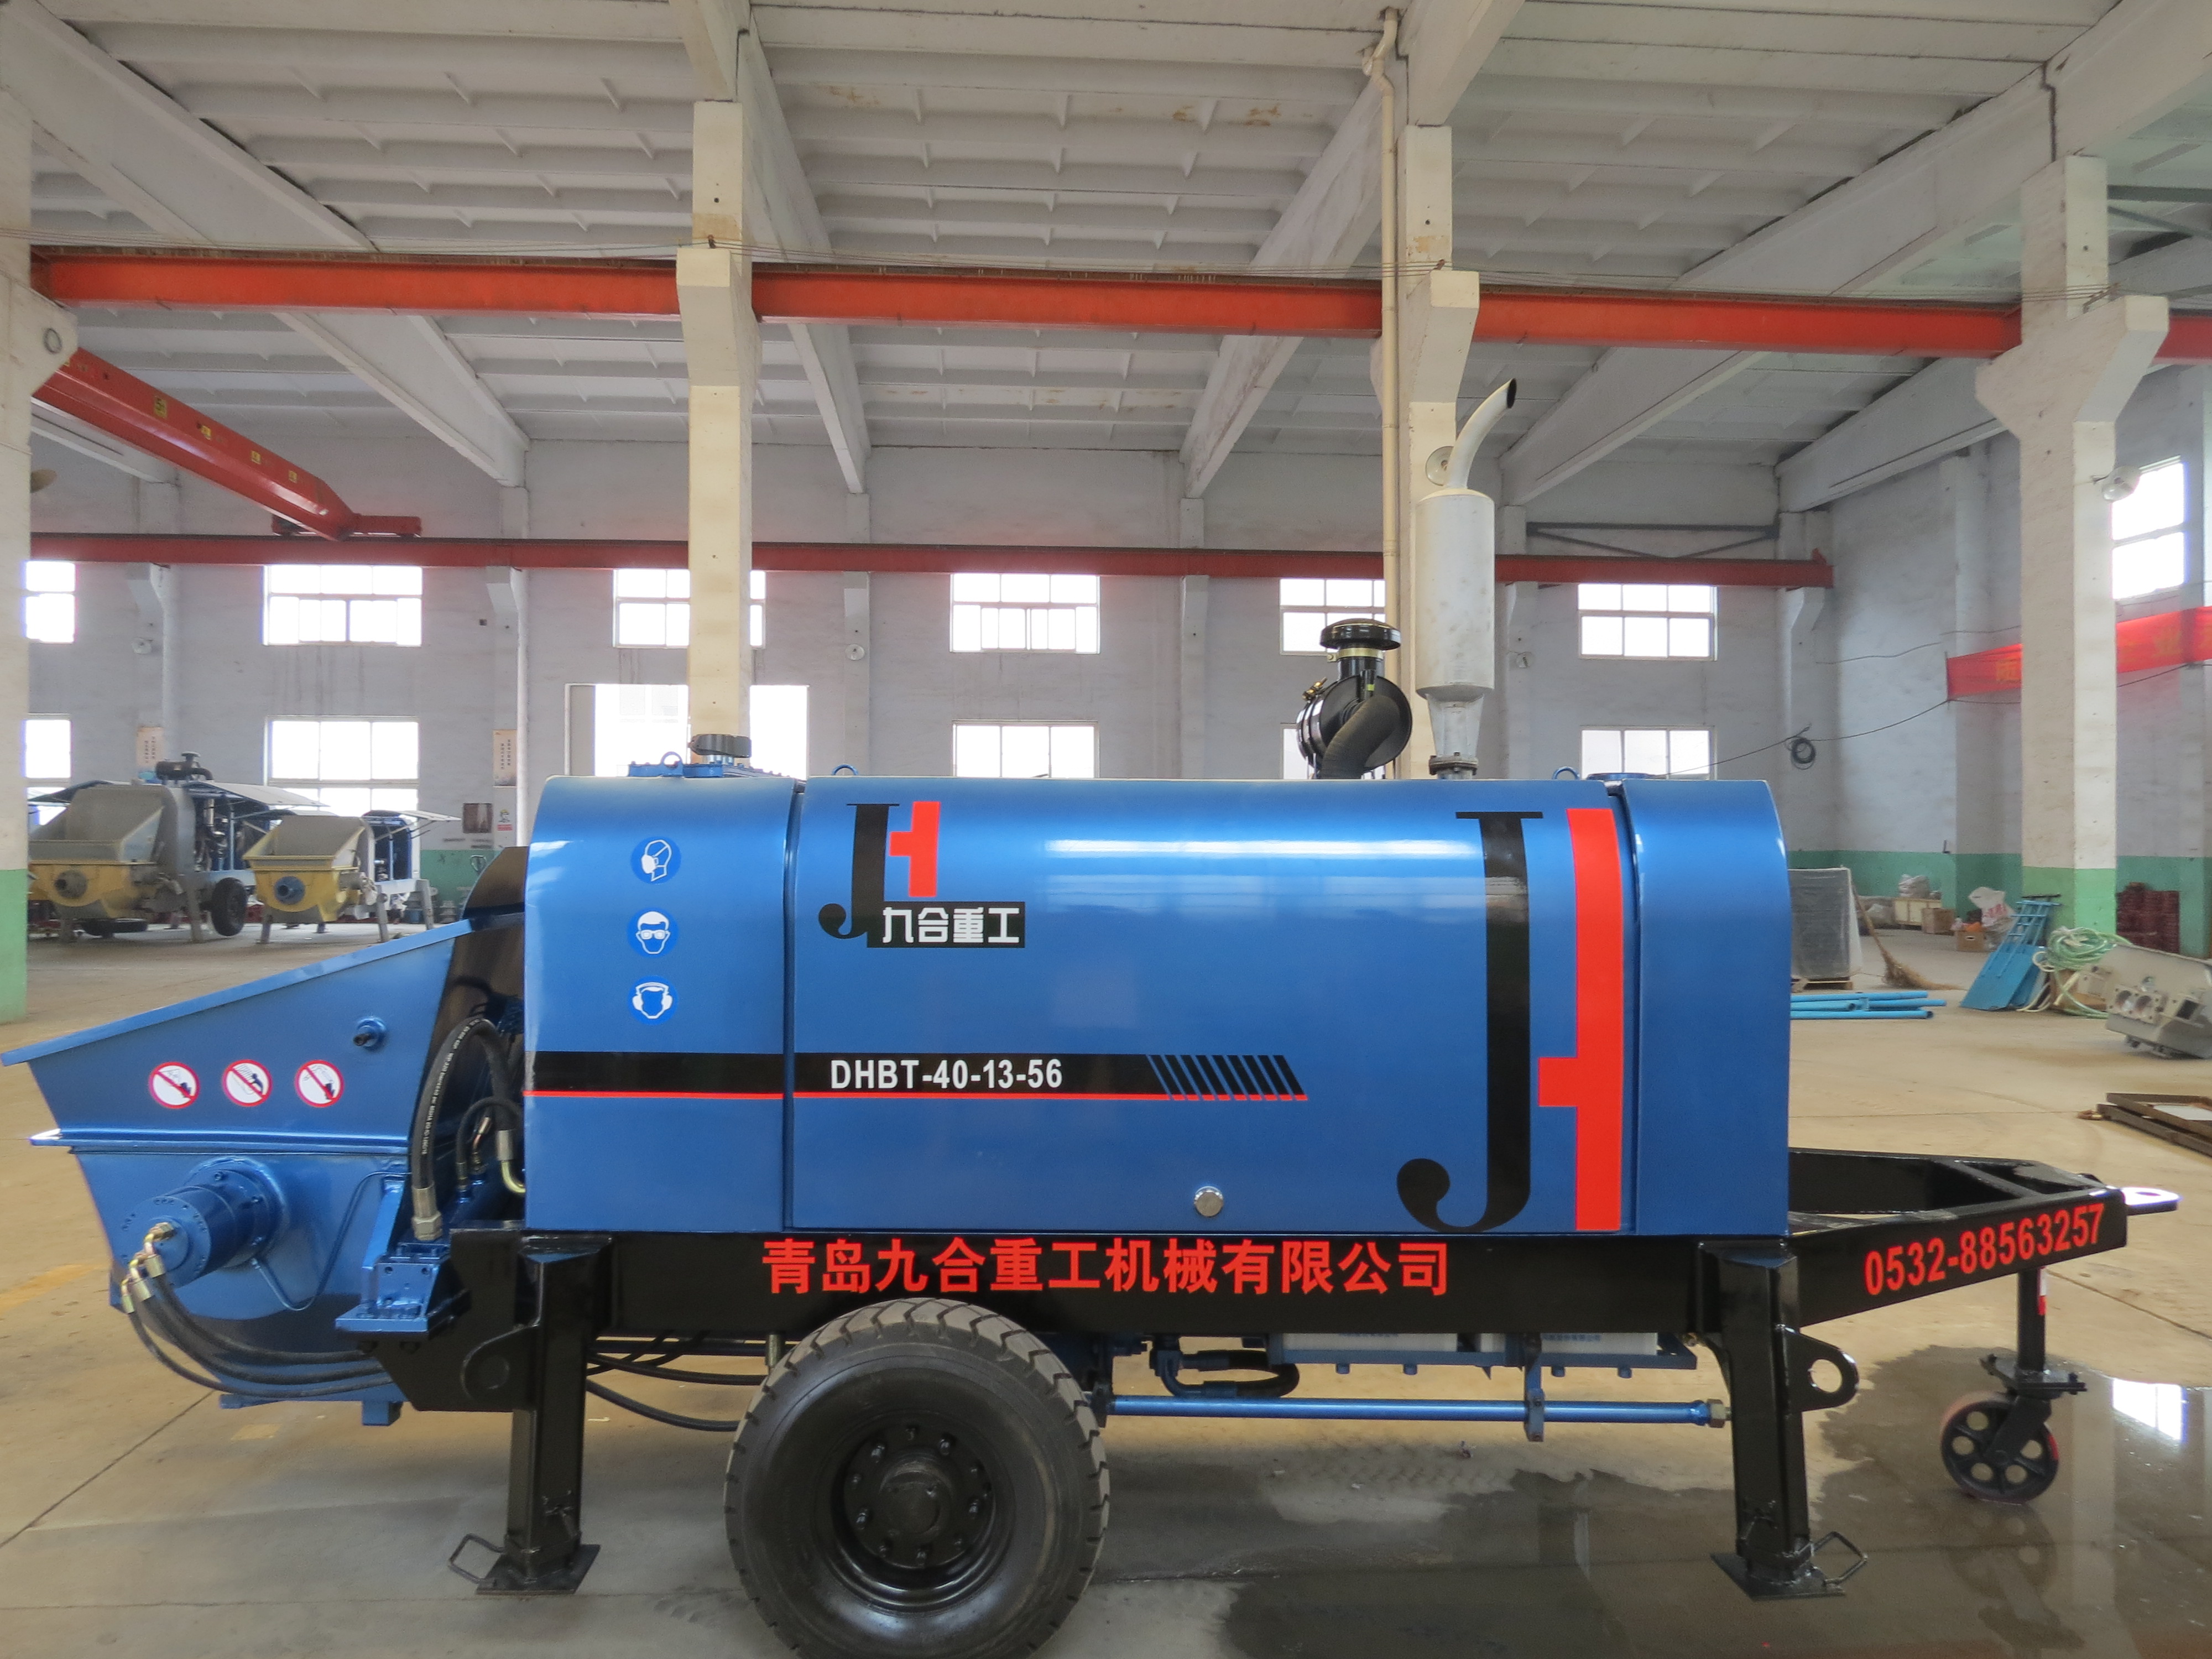 Professional Production Hongda Construction Trailer Diesel Concrete Pump